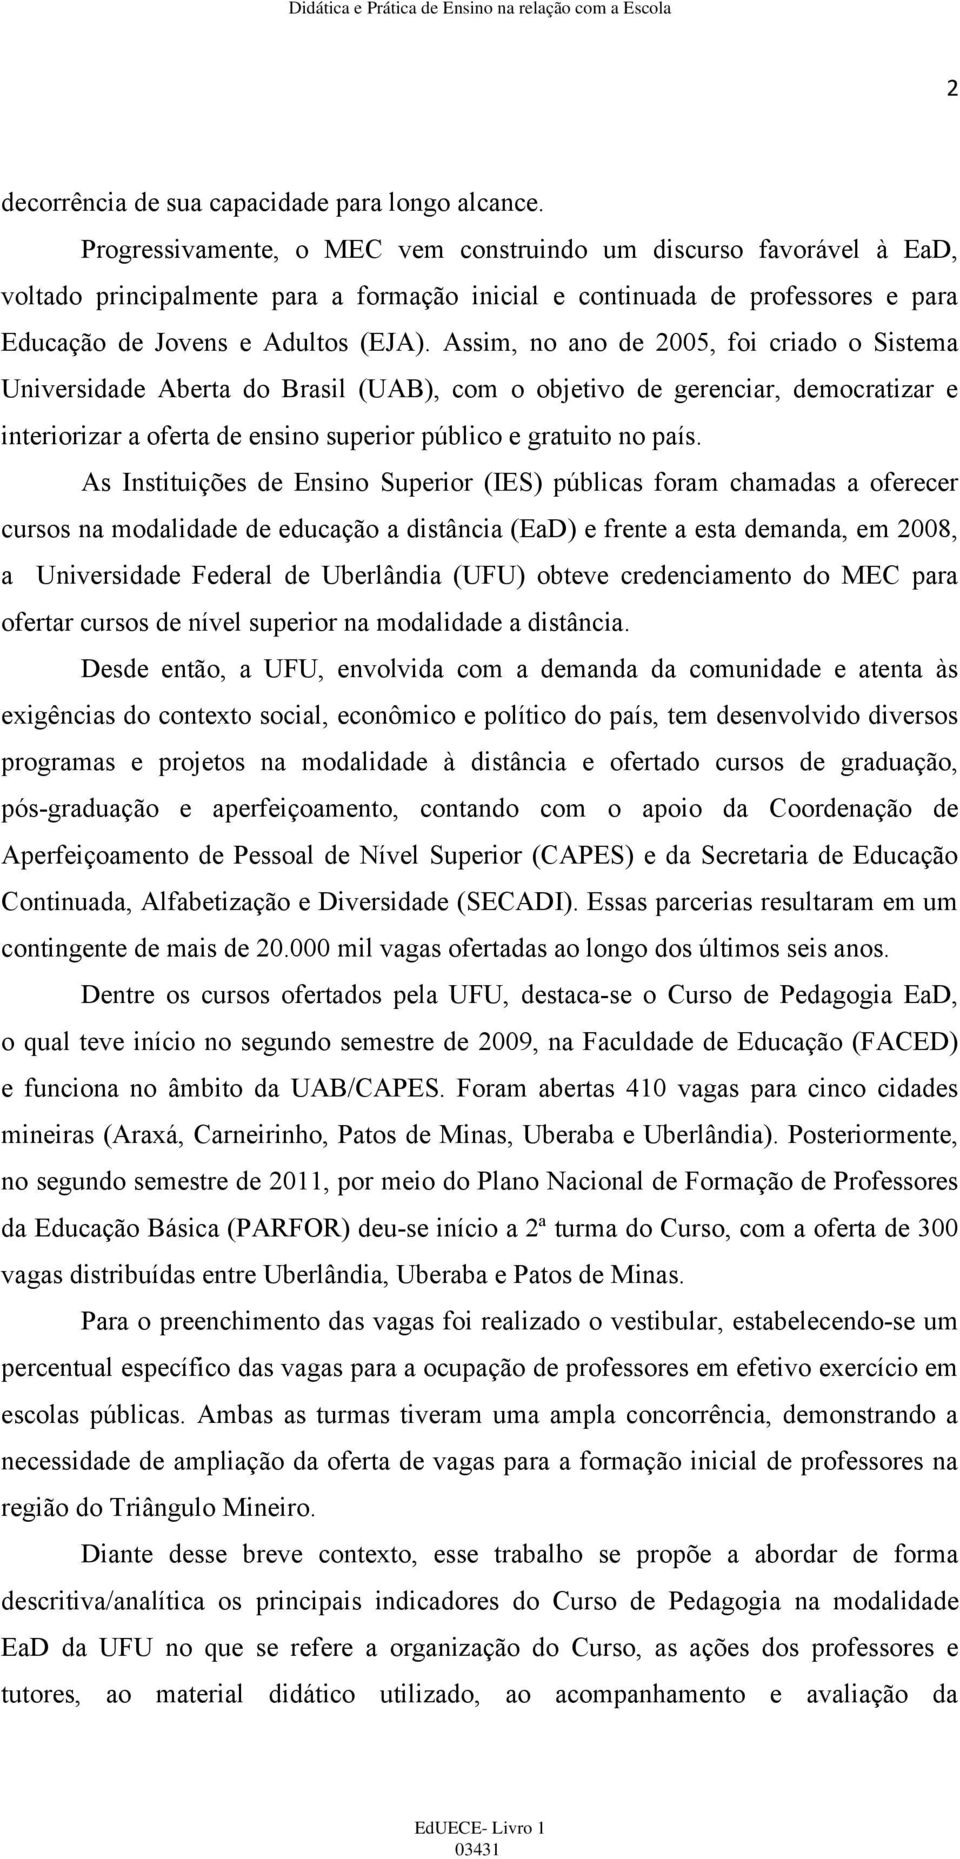 Assim, no ano de 2005, foi criado o Sistema Universidade Aberta do Brasil (UAB), com o objetivo de gerenciar, democratizar e interiorizar a oferta de ensino superior público e gratuito no país.